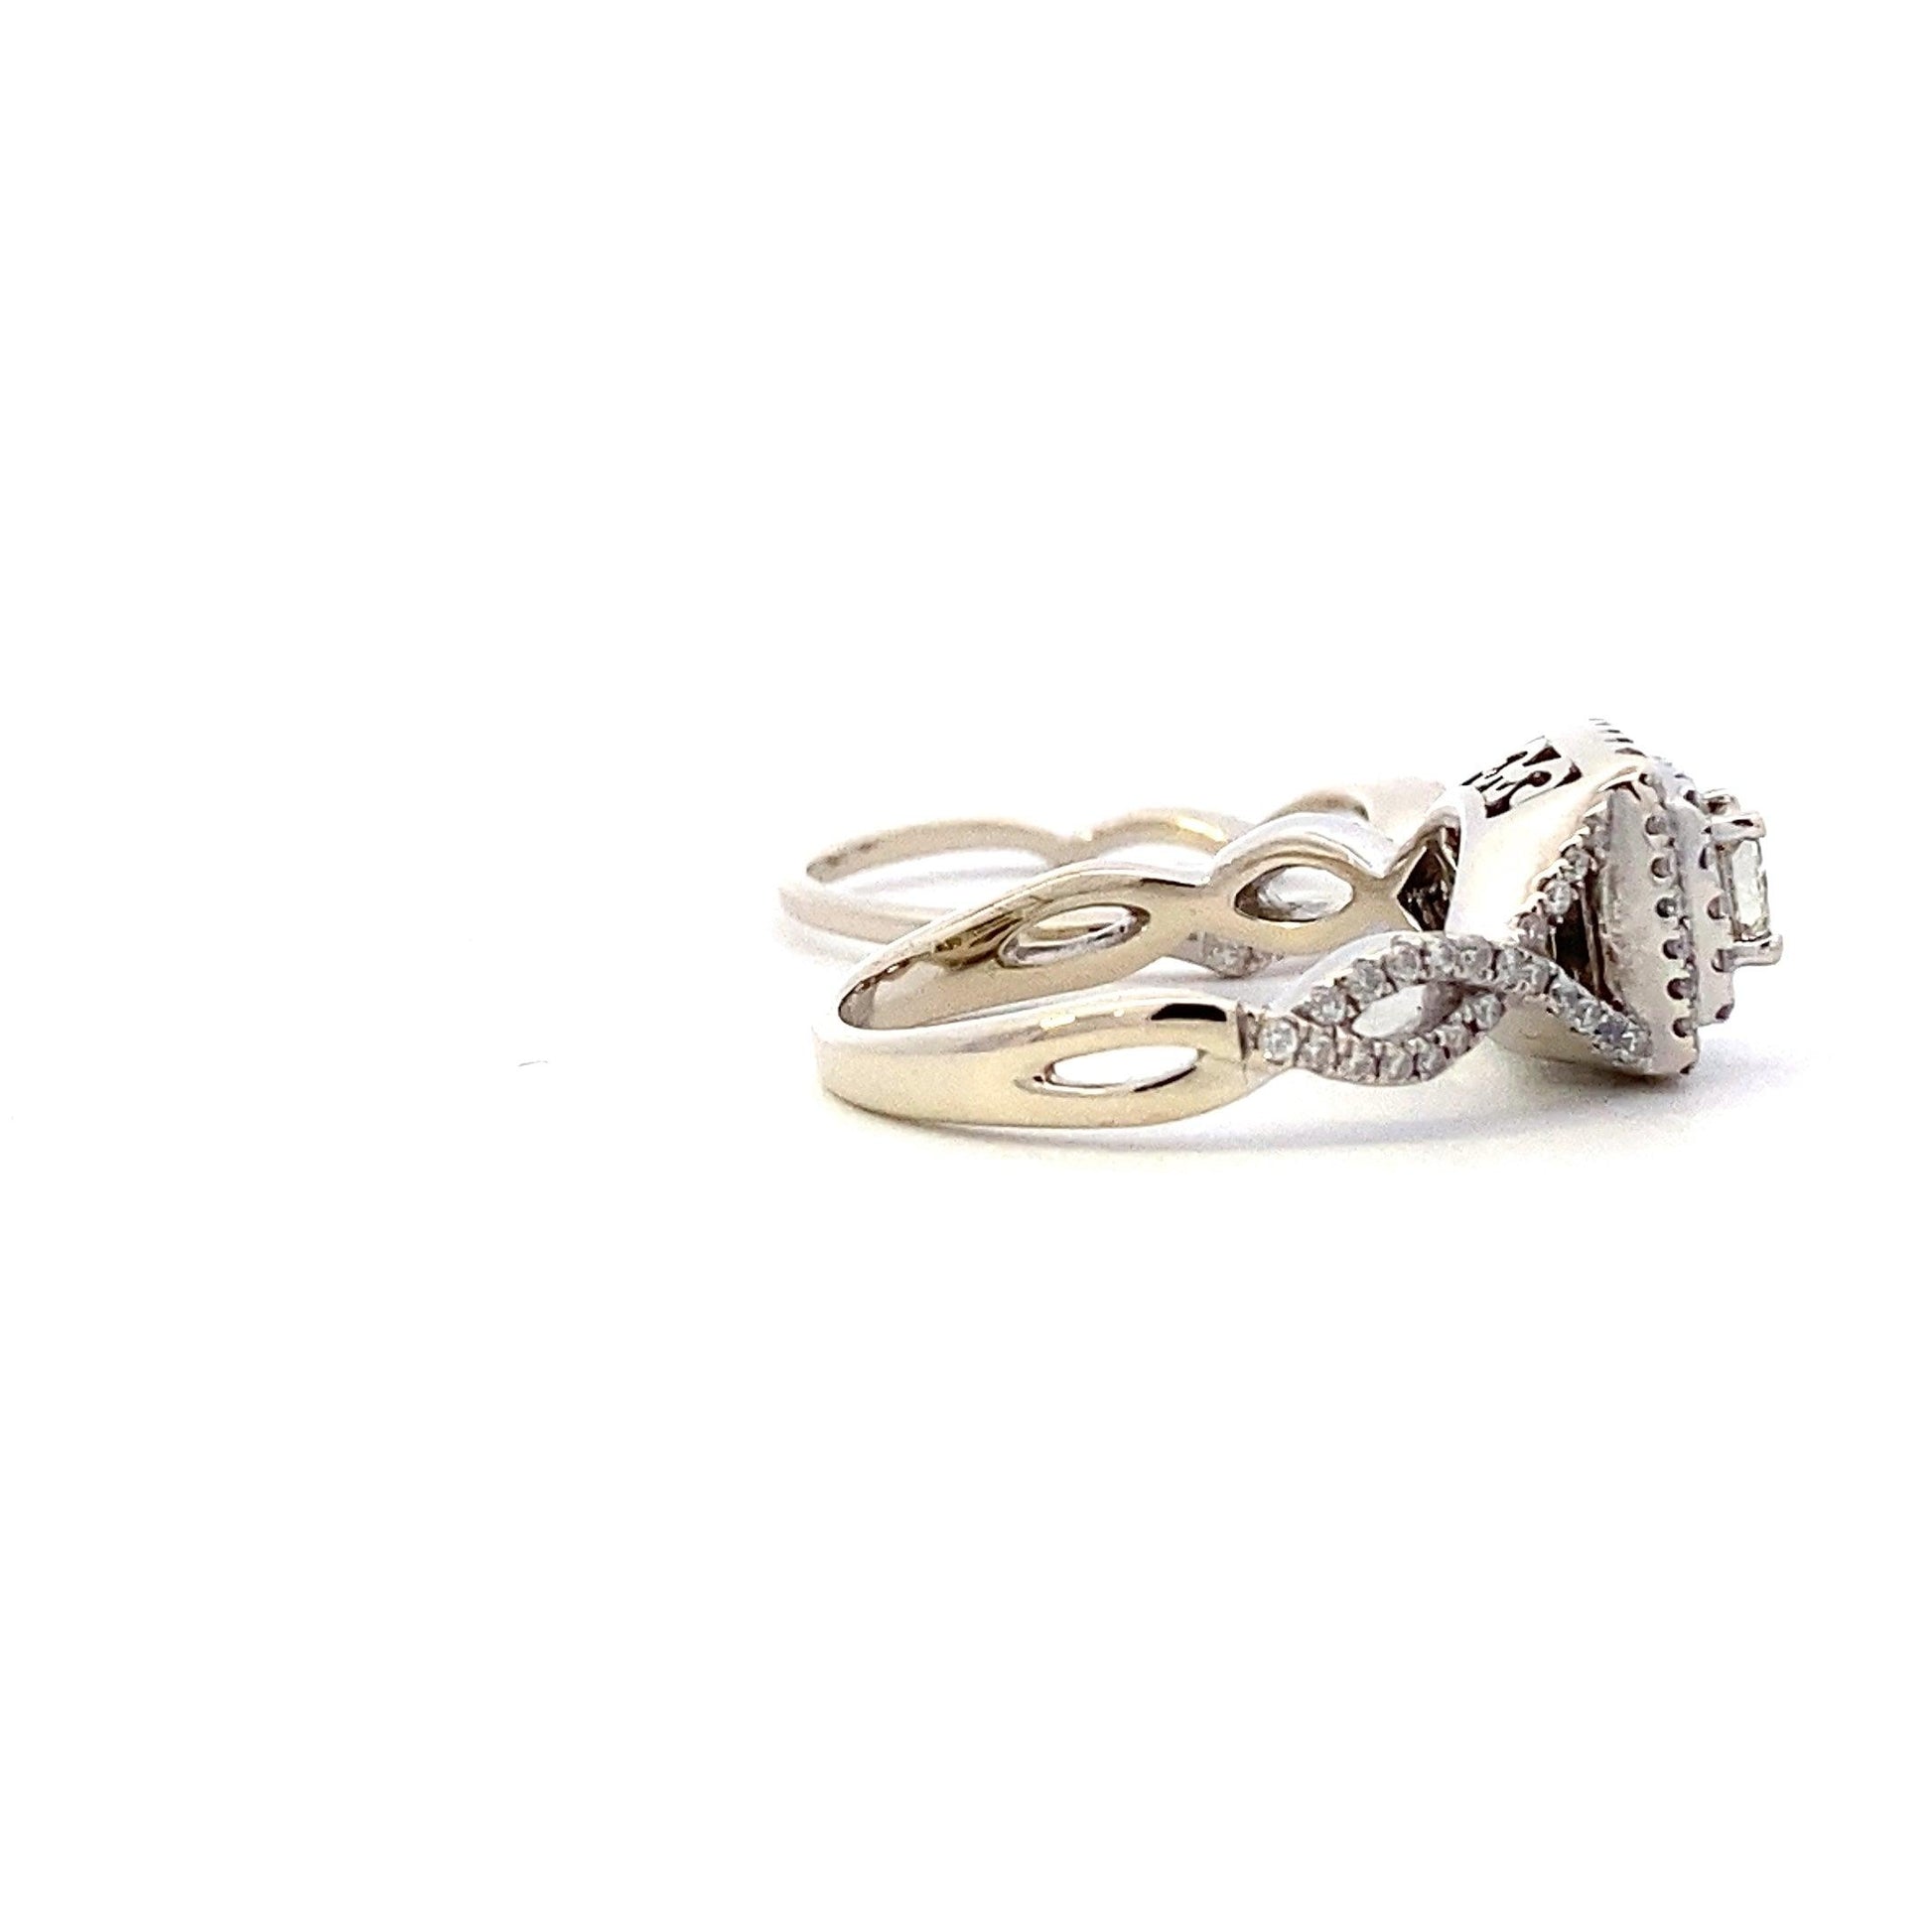 14K White Gold Diamond Engagement & Wedding Ring Set - 0.62ct - ipawnishop.com